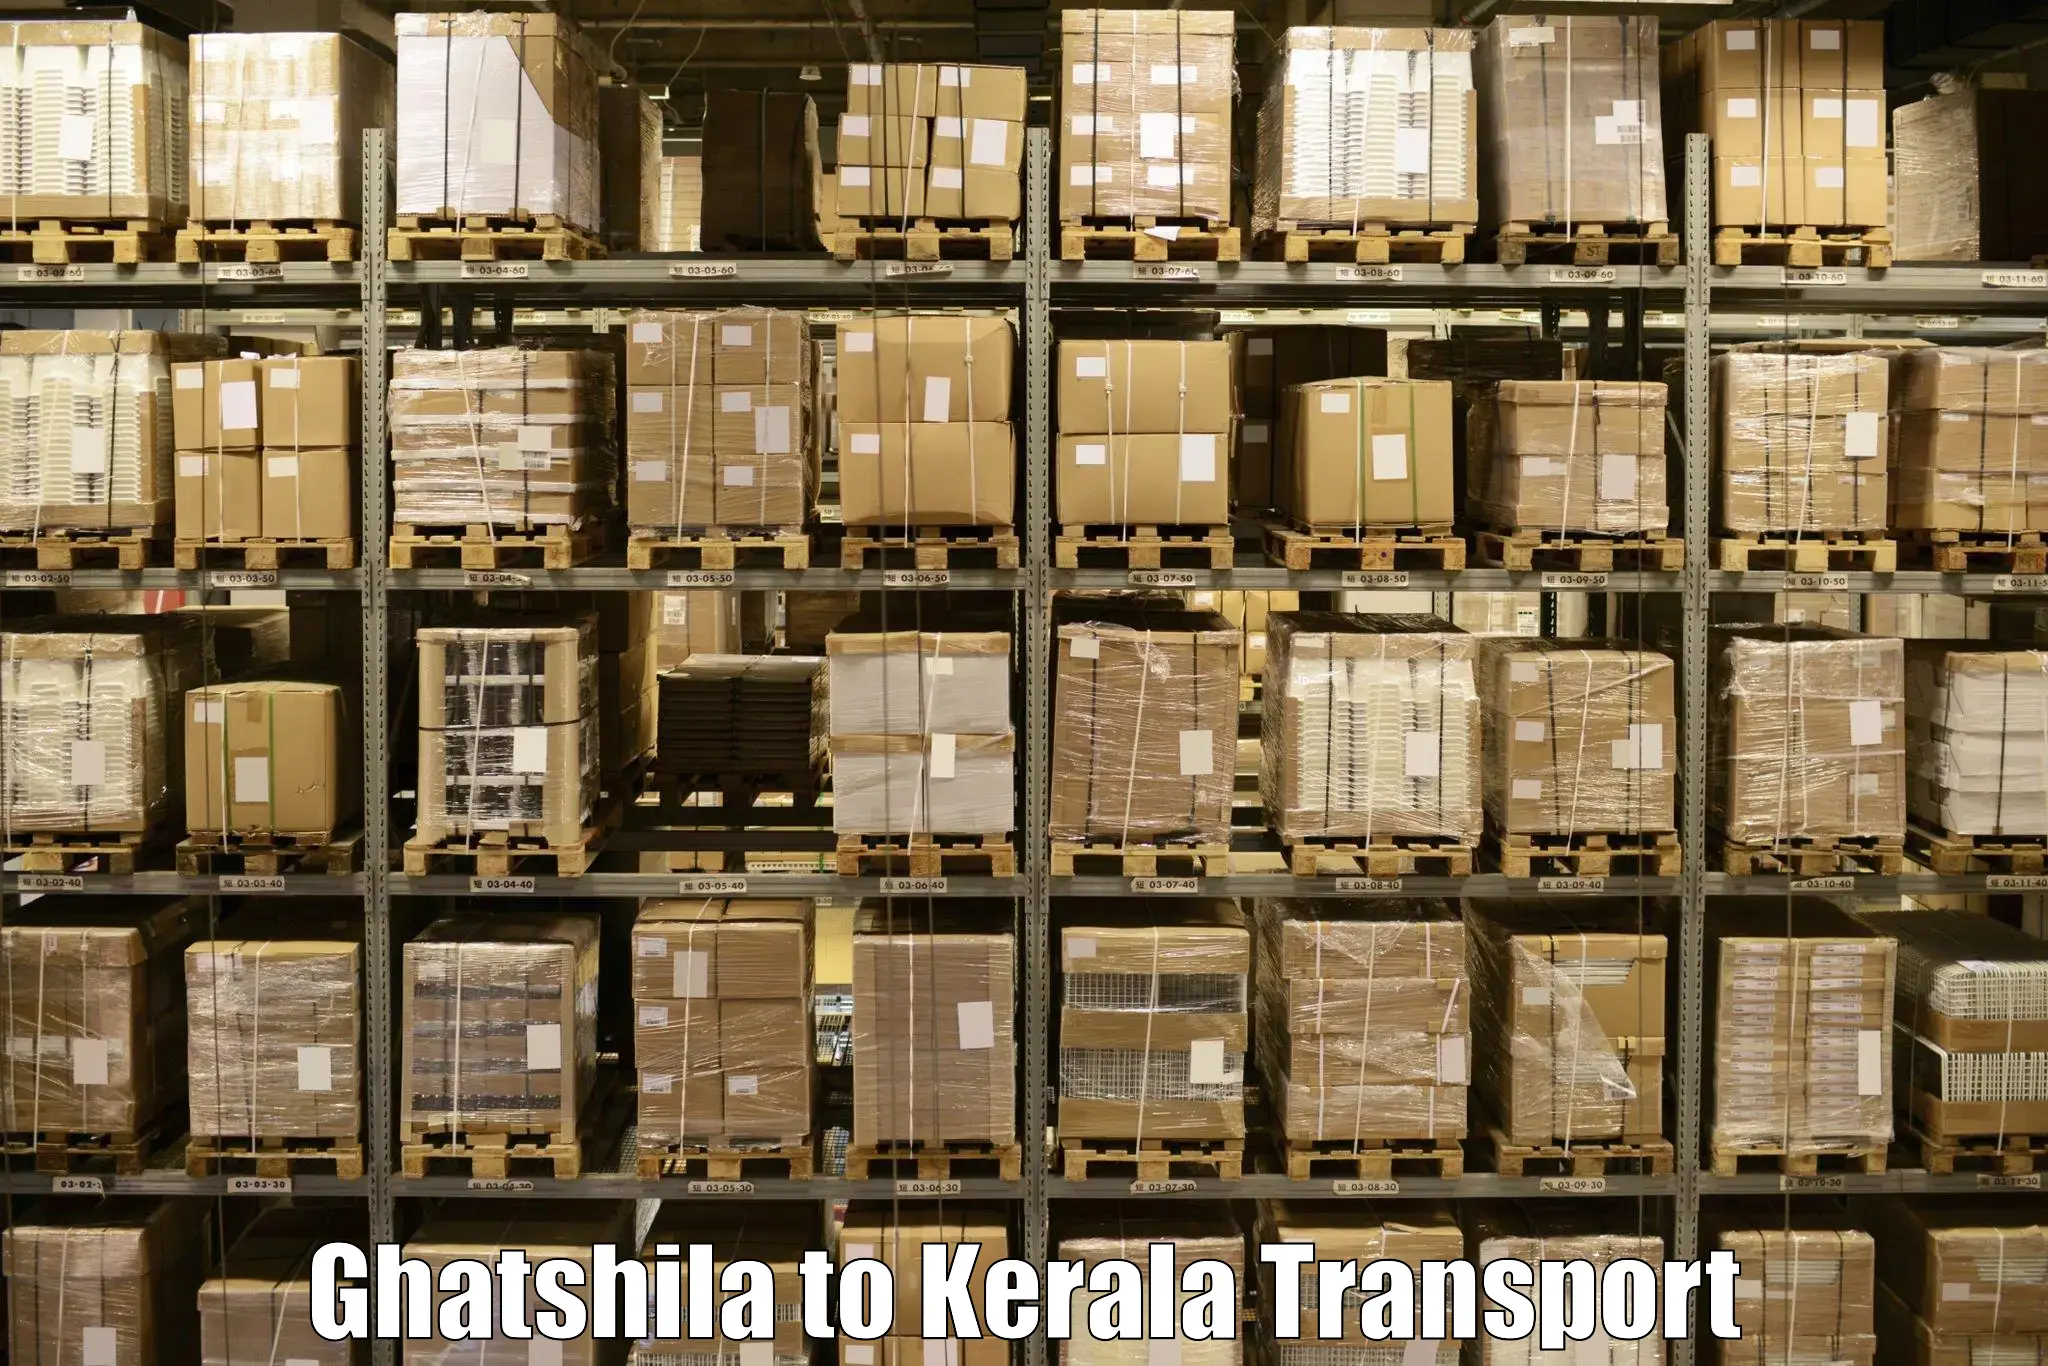 Nearby transport service Ghatshila to Kochi